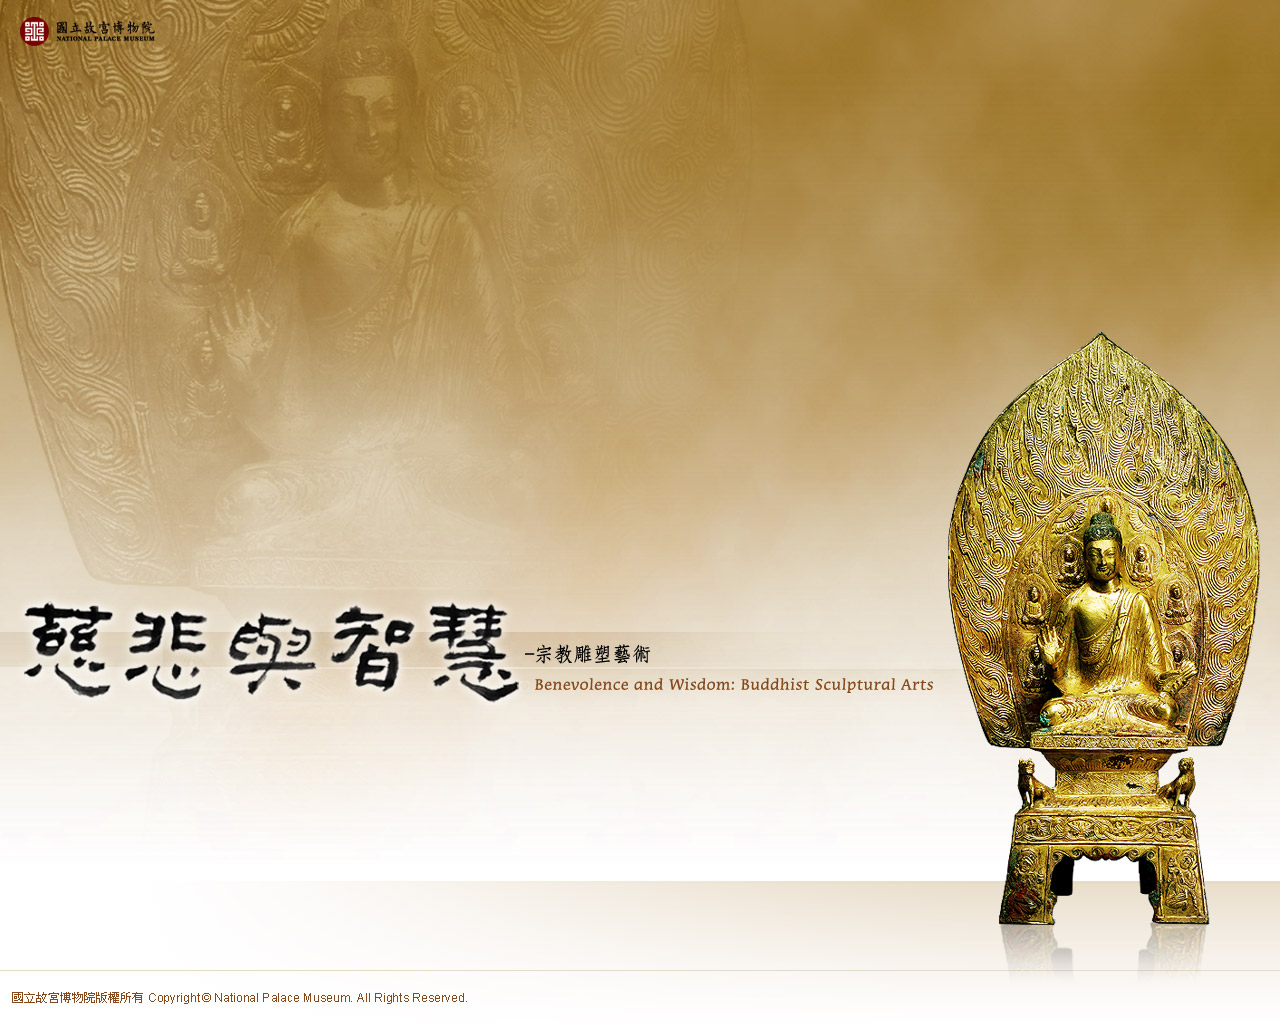 桌布下載－慈悲與智慧－宗教雕塑藝術　Benevolence and Wisdom: Buddhist Sculptural Arts